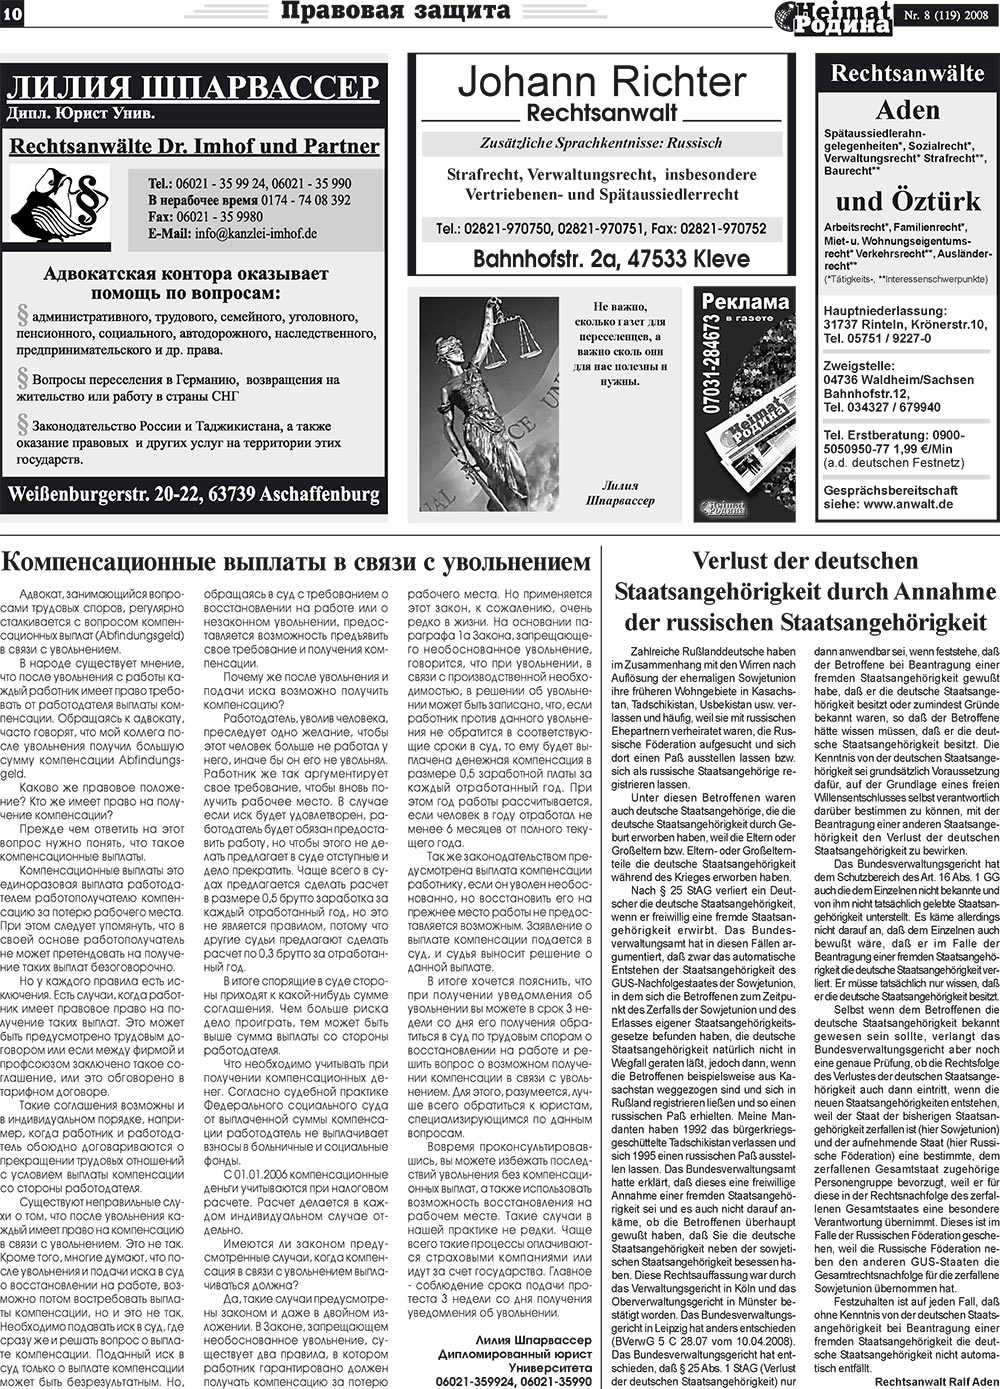 Heimat-Родина (газета). 2008 год, номер 8, стр. 10